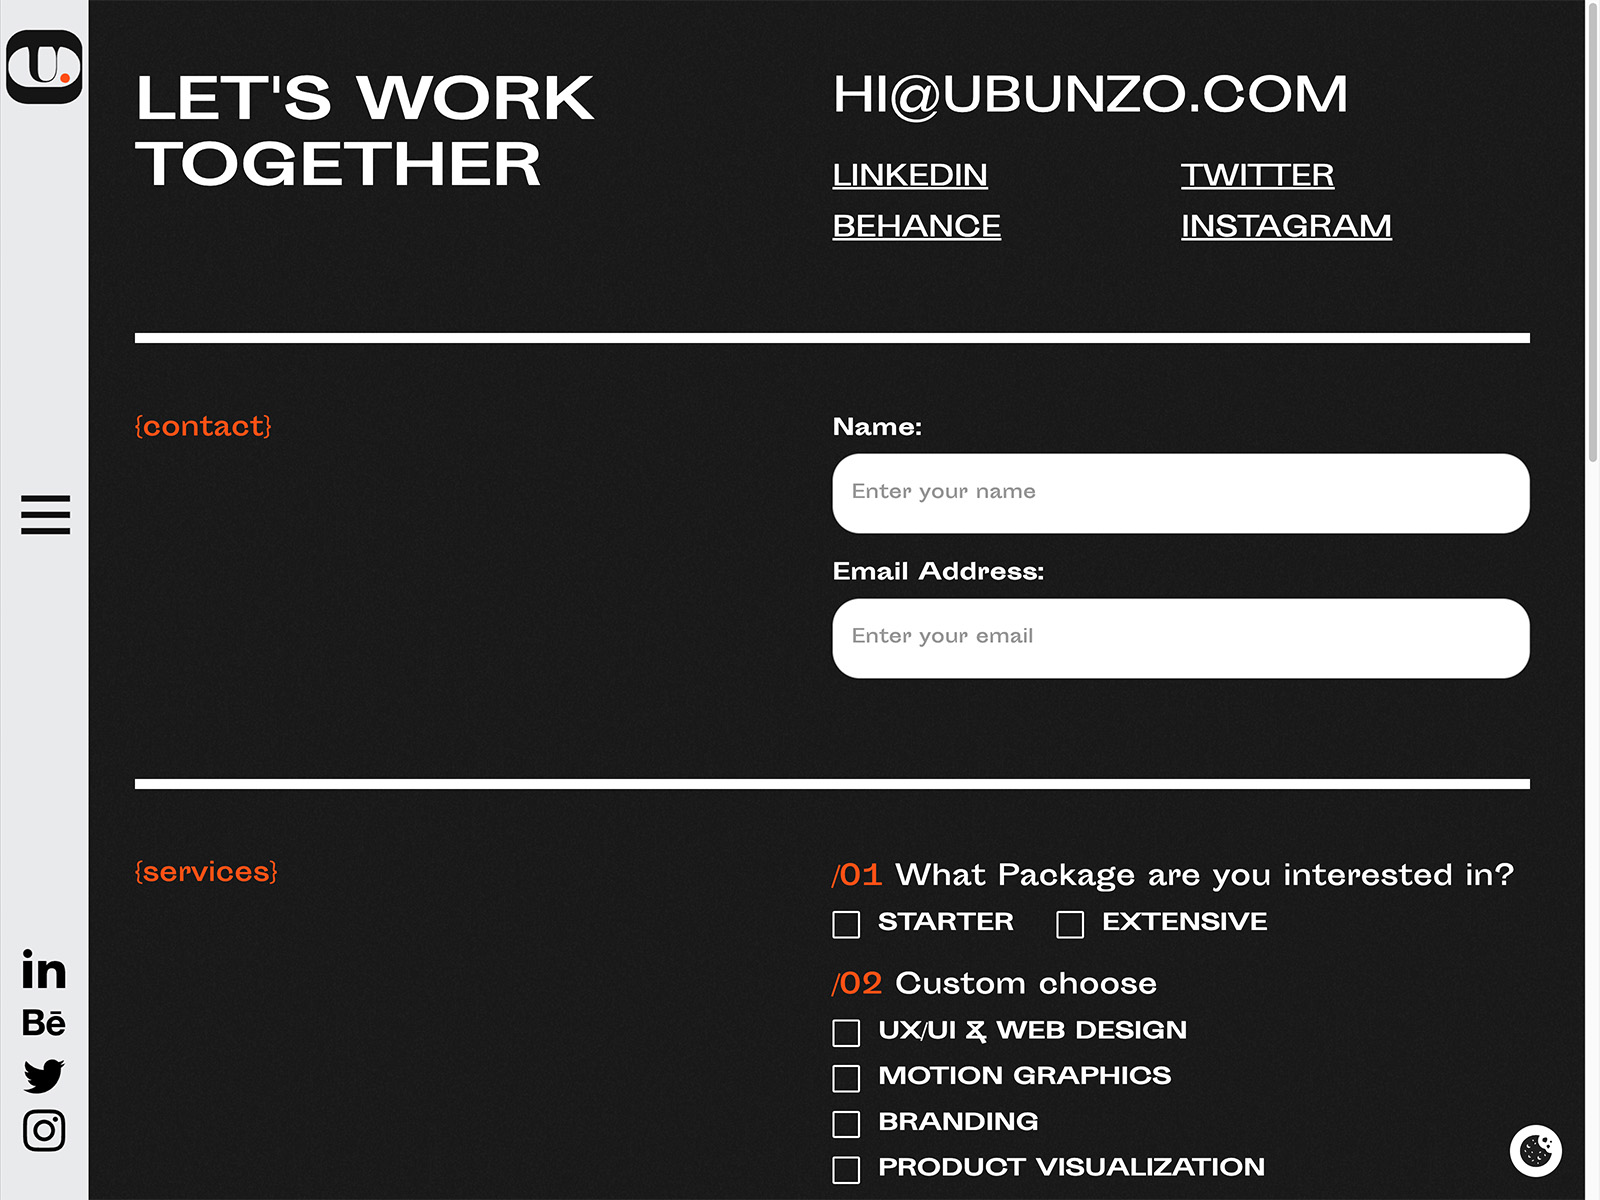 Ubunzo Contact Page